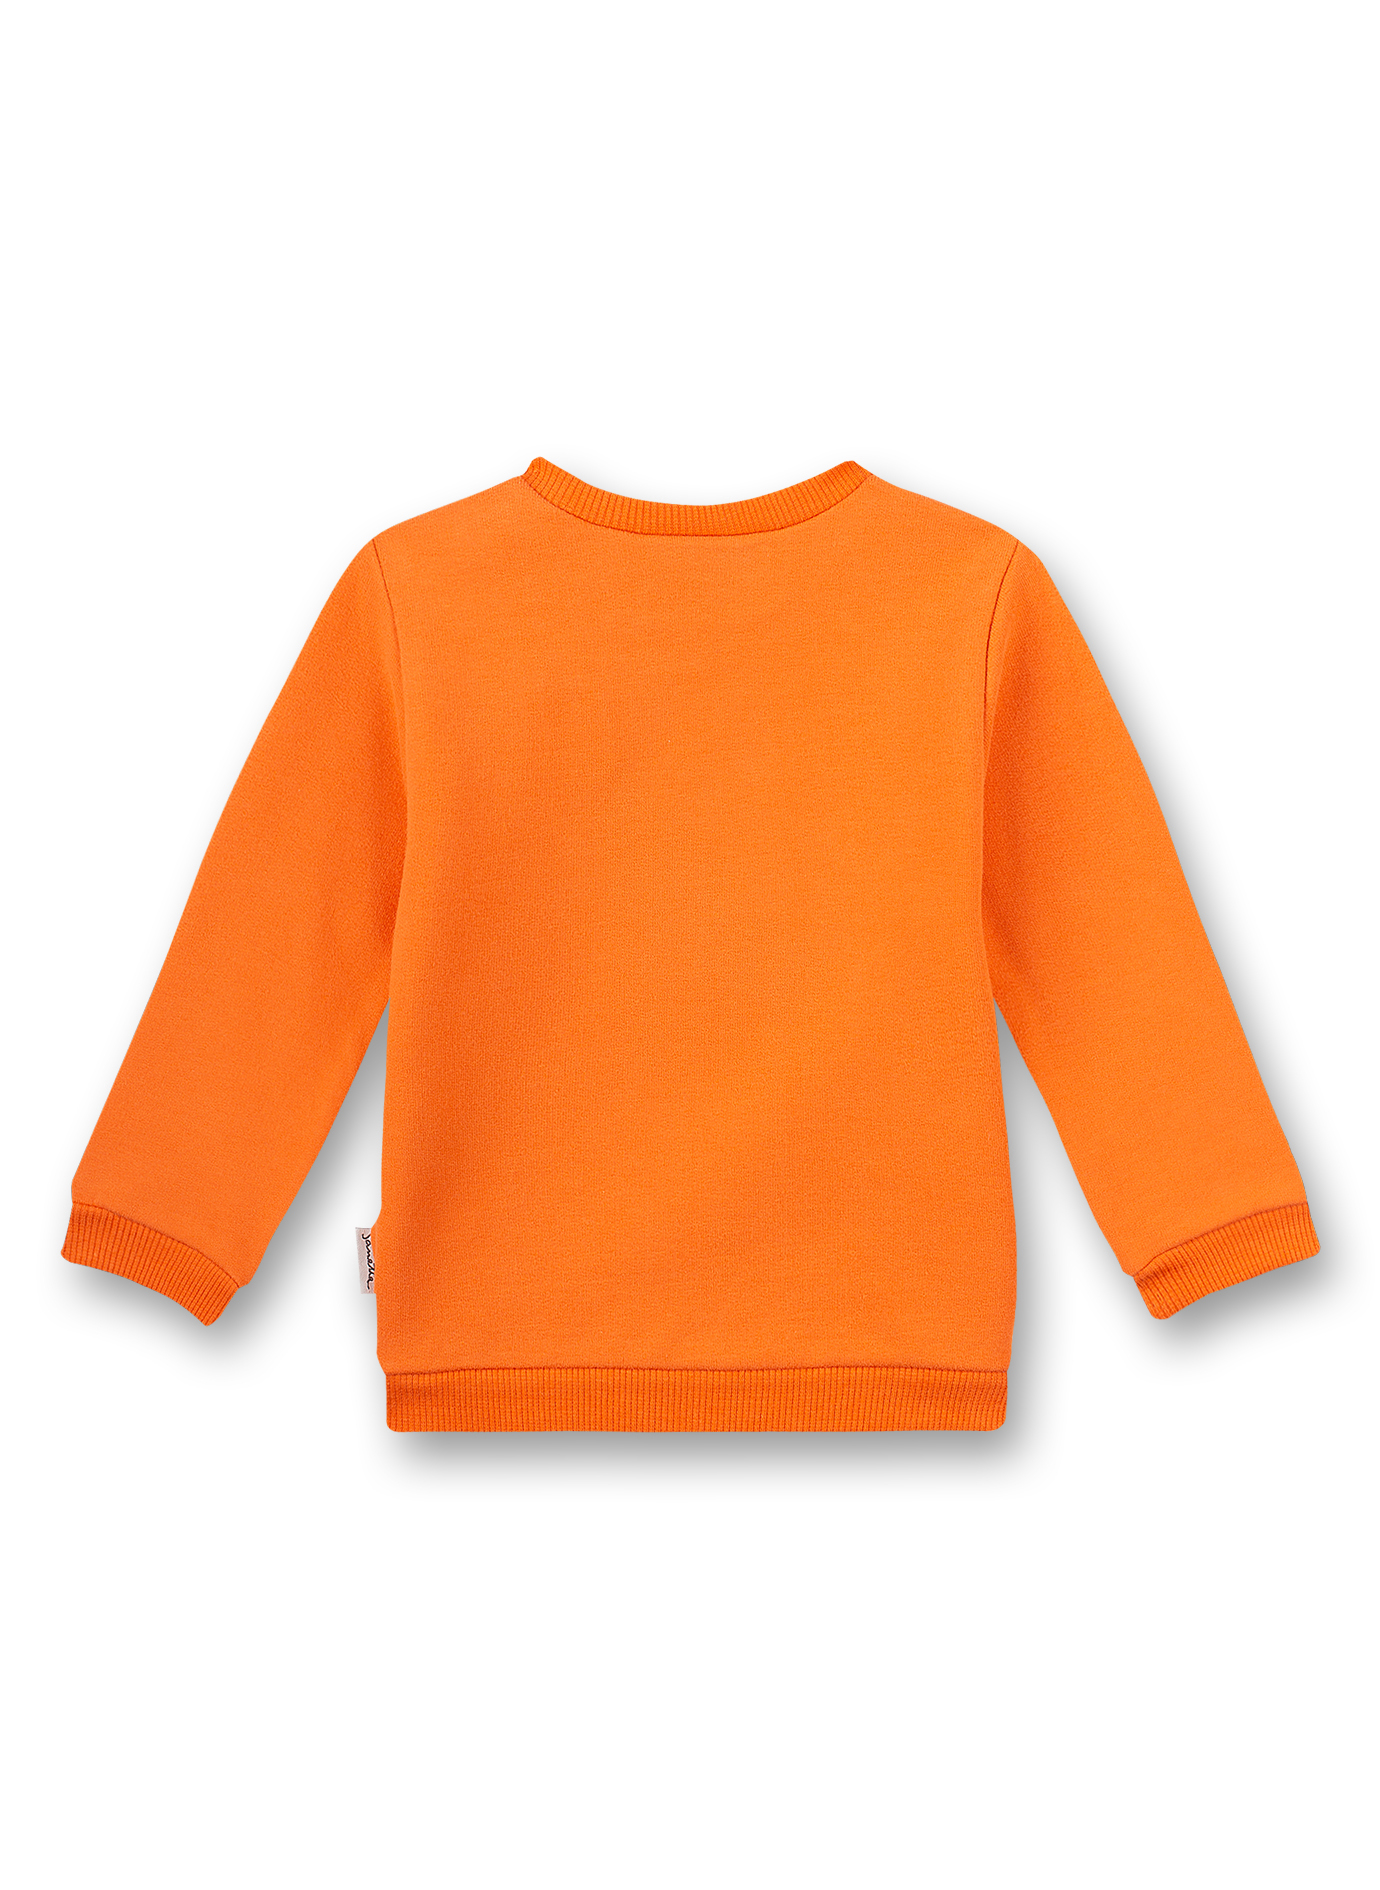 Mädchen-Sweatshirt Orange Kangaroo